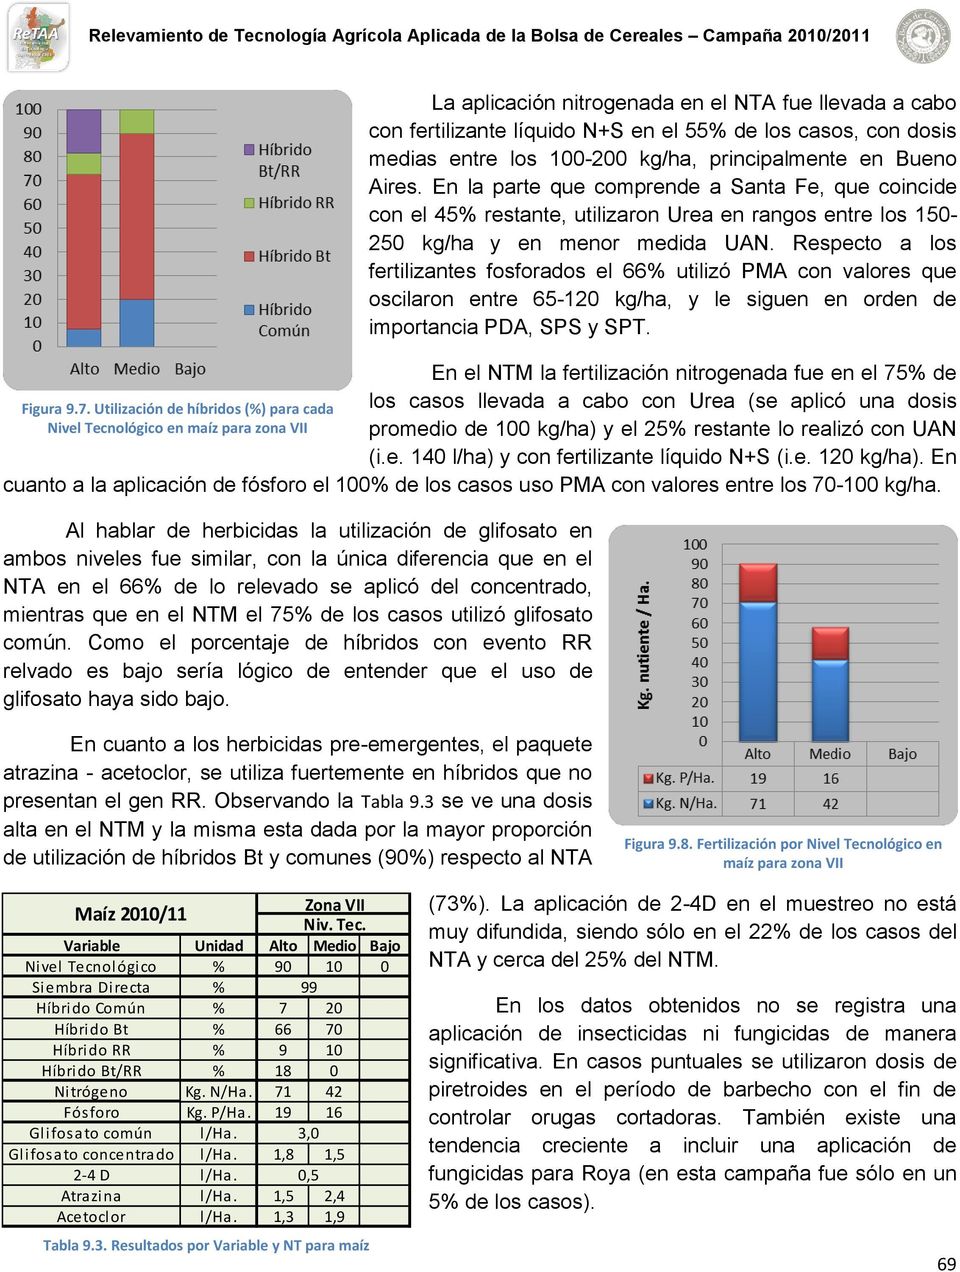 Respecto a los fertilizantes fosforados el 66% utilizó PMA con valores que oscilaron entre 65-120 kg/ha, y le siguen en orden de importancia PDA, SPS y SPT.